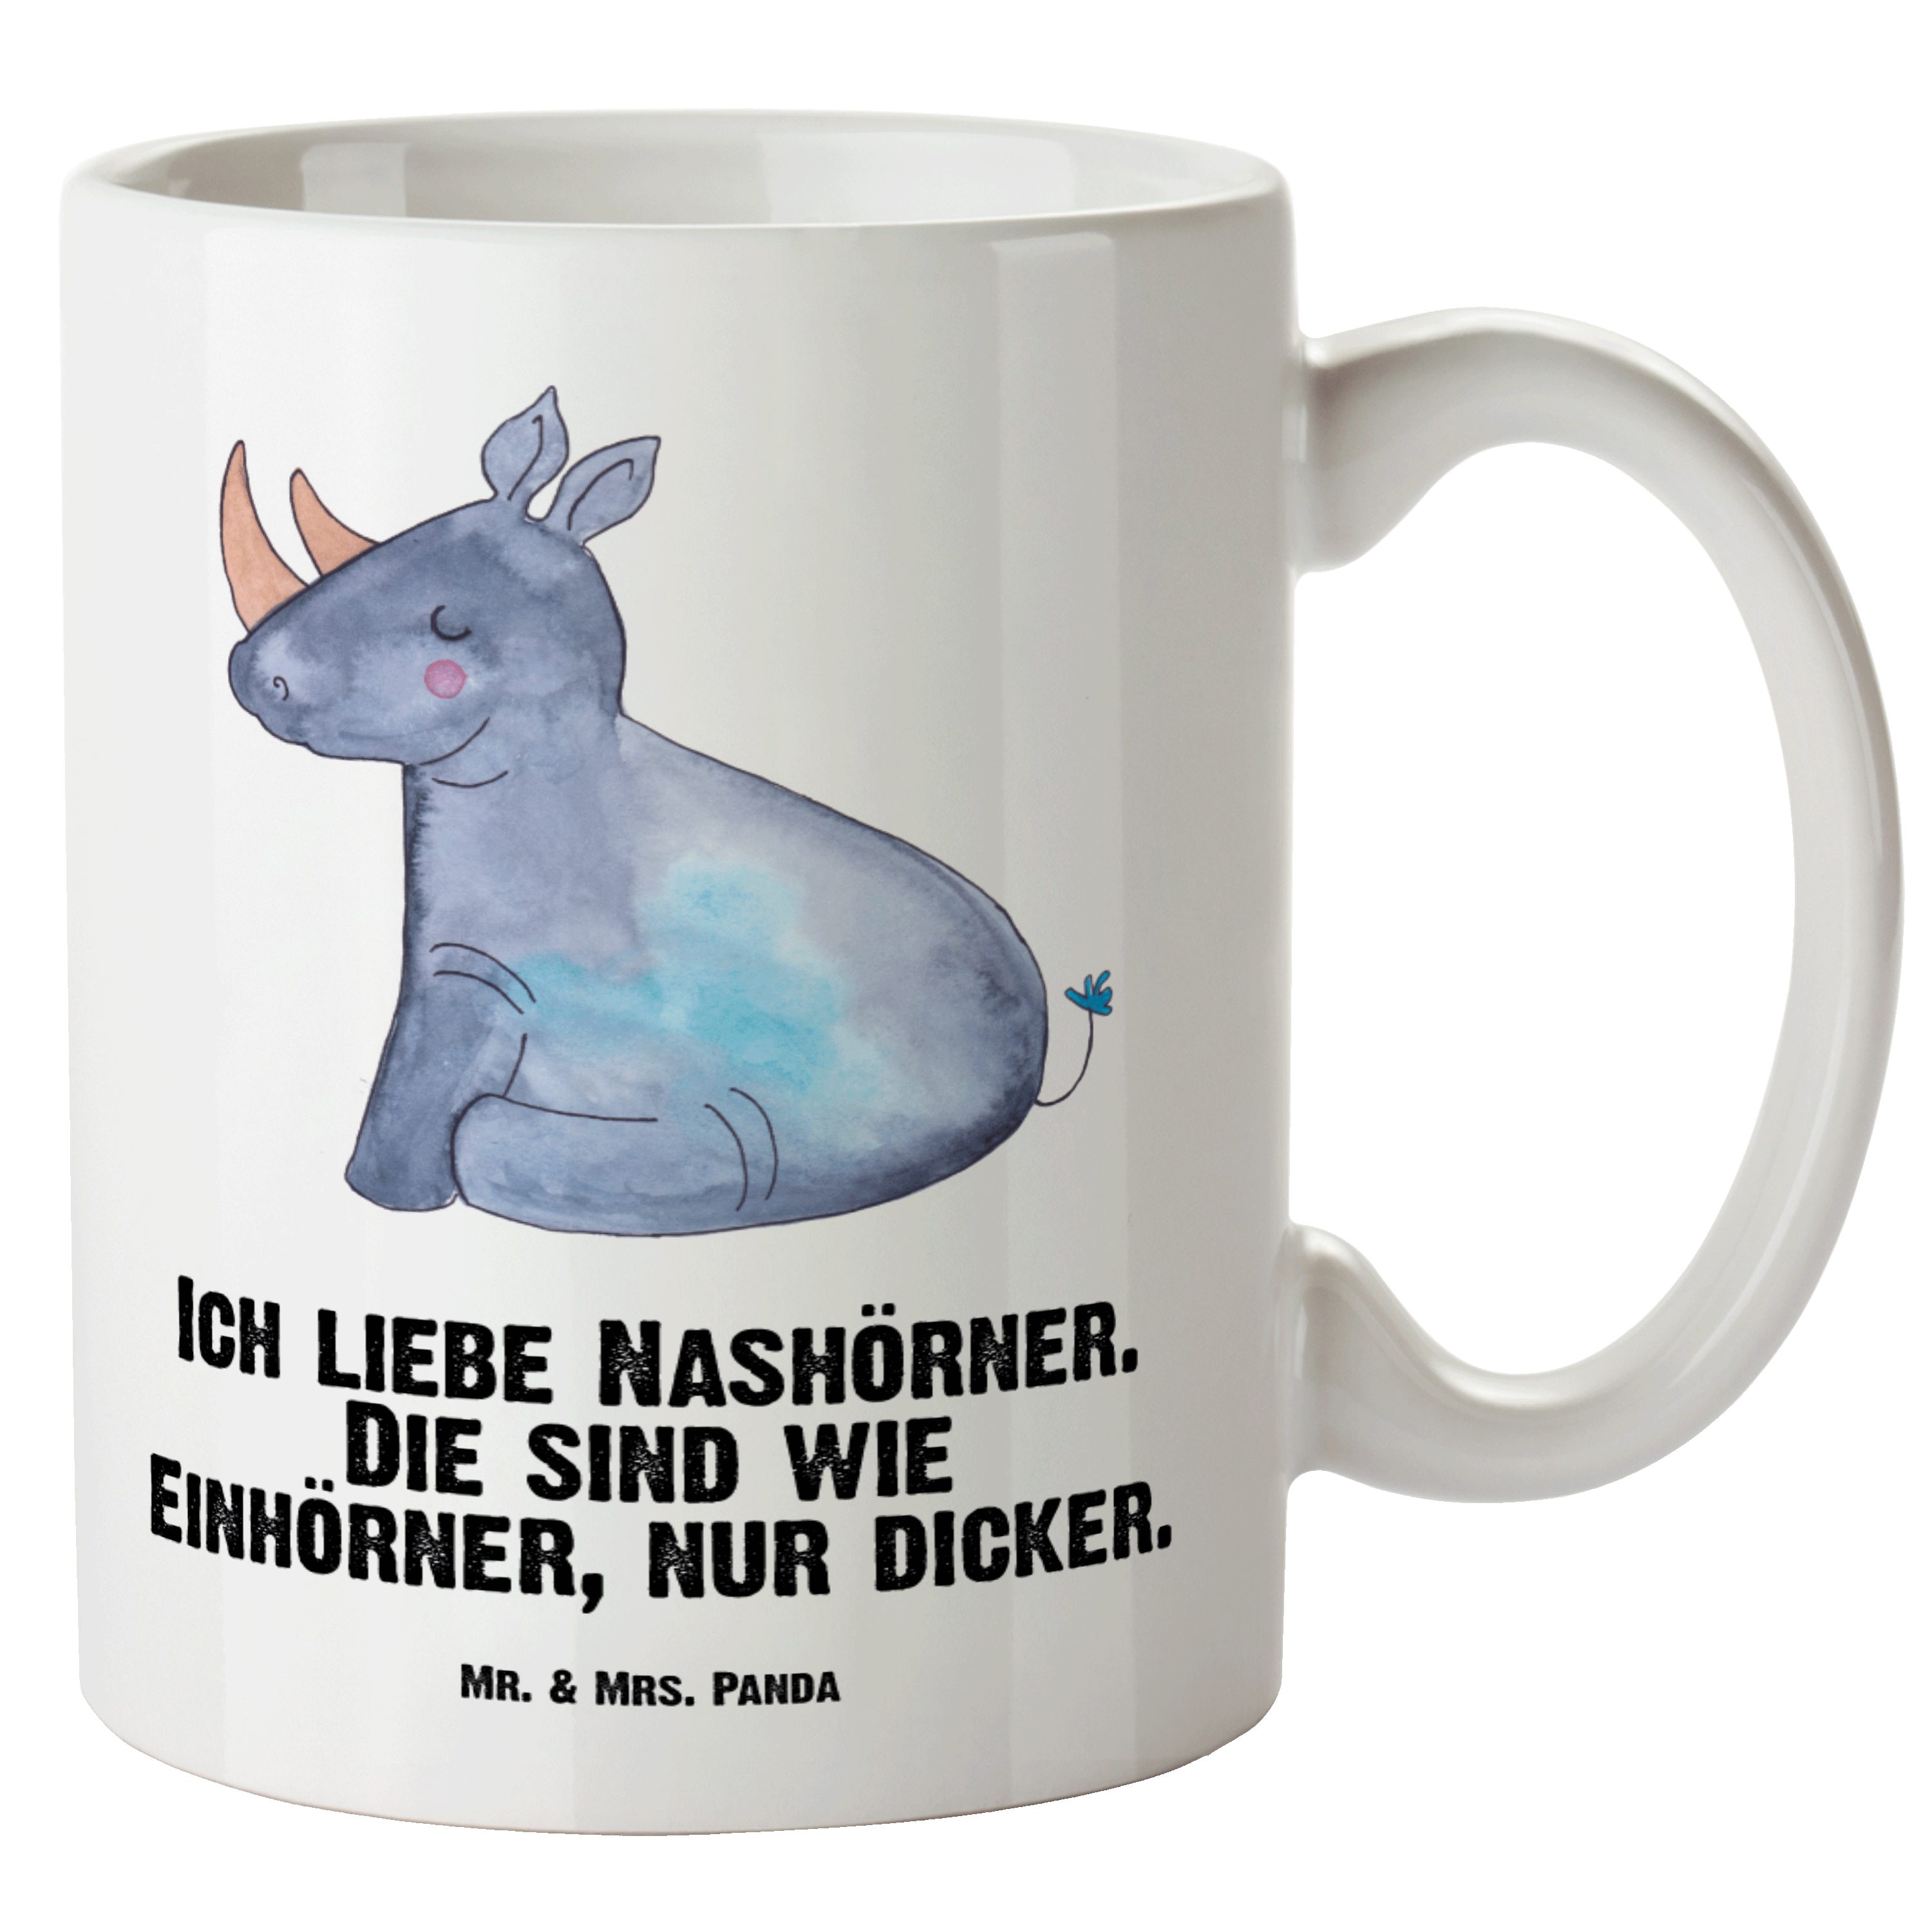 Mr. & Mrs. Panda Tasse Einhorn Nashorn - Weiß - Geschenk, XL Tasse, Große Tasse, XL Teetasse, XL Tasse Keramik